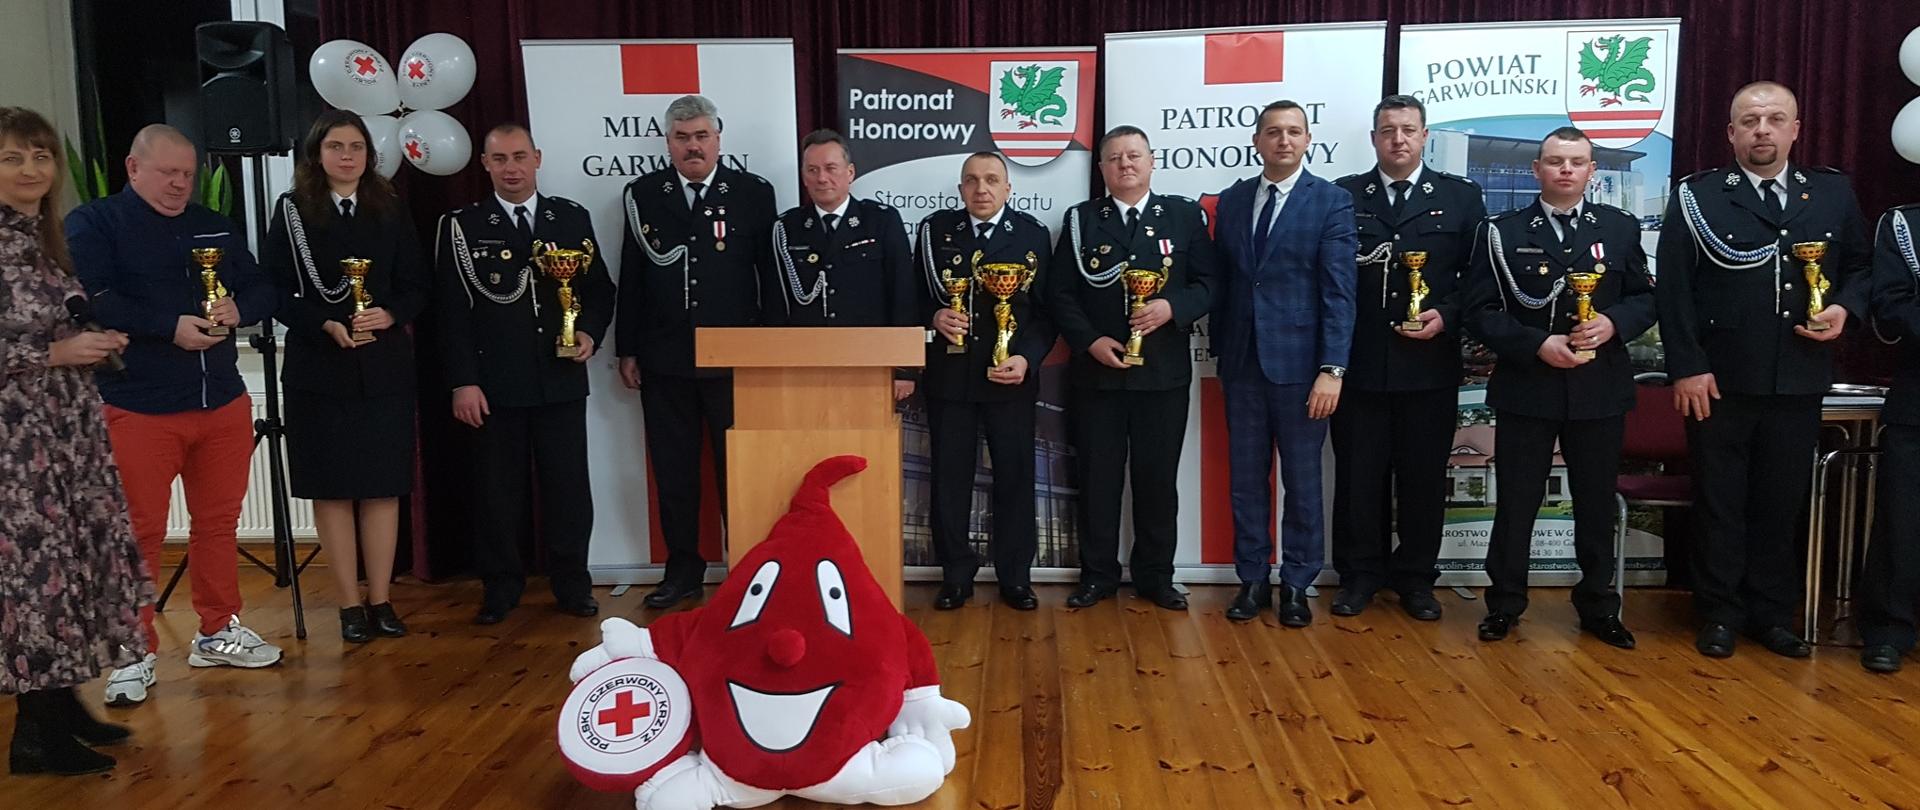 Uroczystość z okazji obchodów 50-lecia działalności Klubu Honorowych Dawców Krwi PCK im. ks. dr. Antoniego Święcickiego w Garwolinie